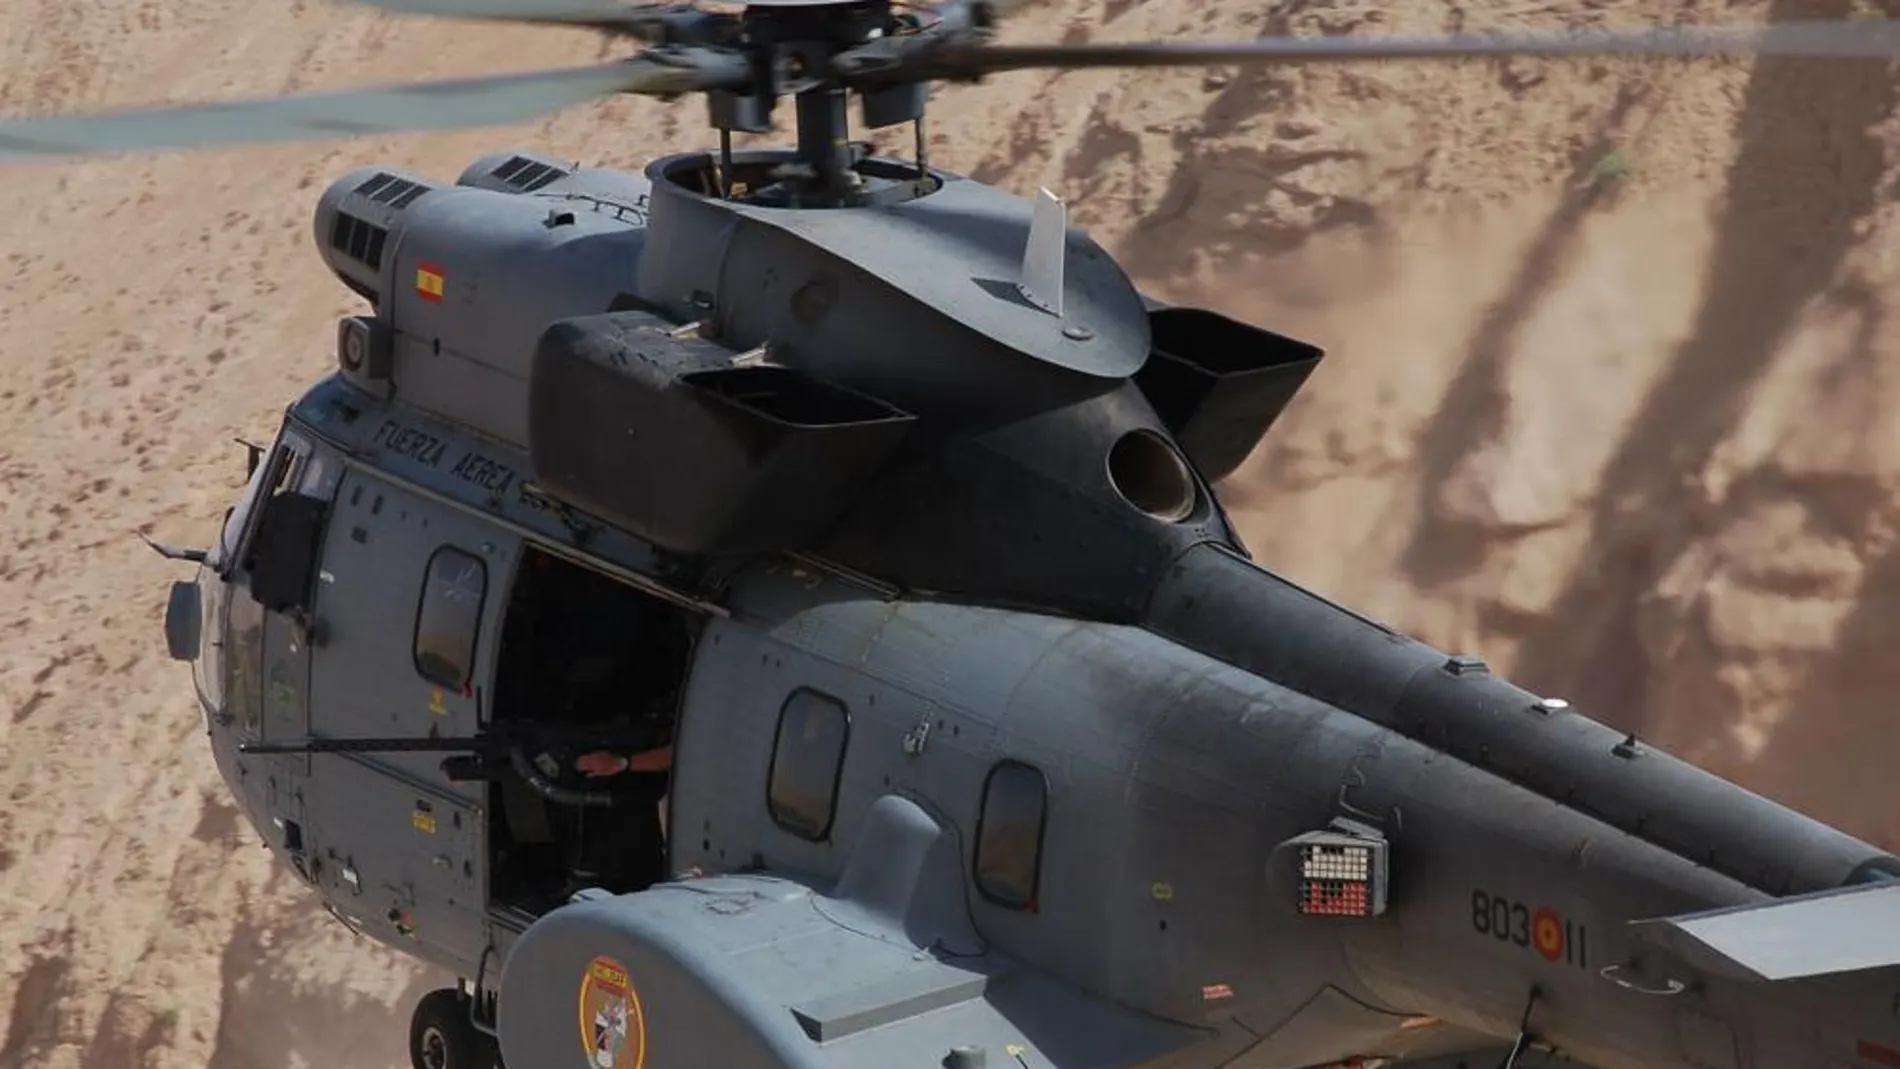 Helicóptero Súper Puma HD.21 en aproximación para una aeroevacuación médica (MEDEVAC)